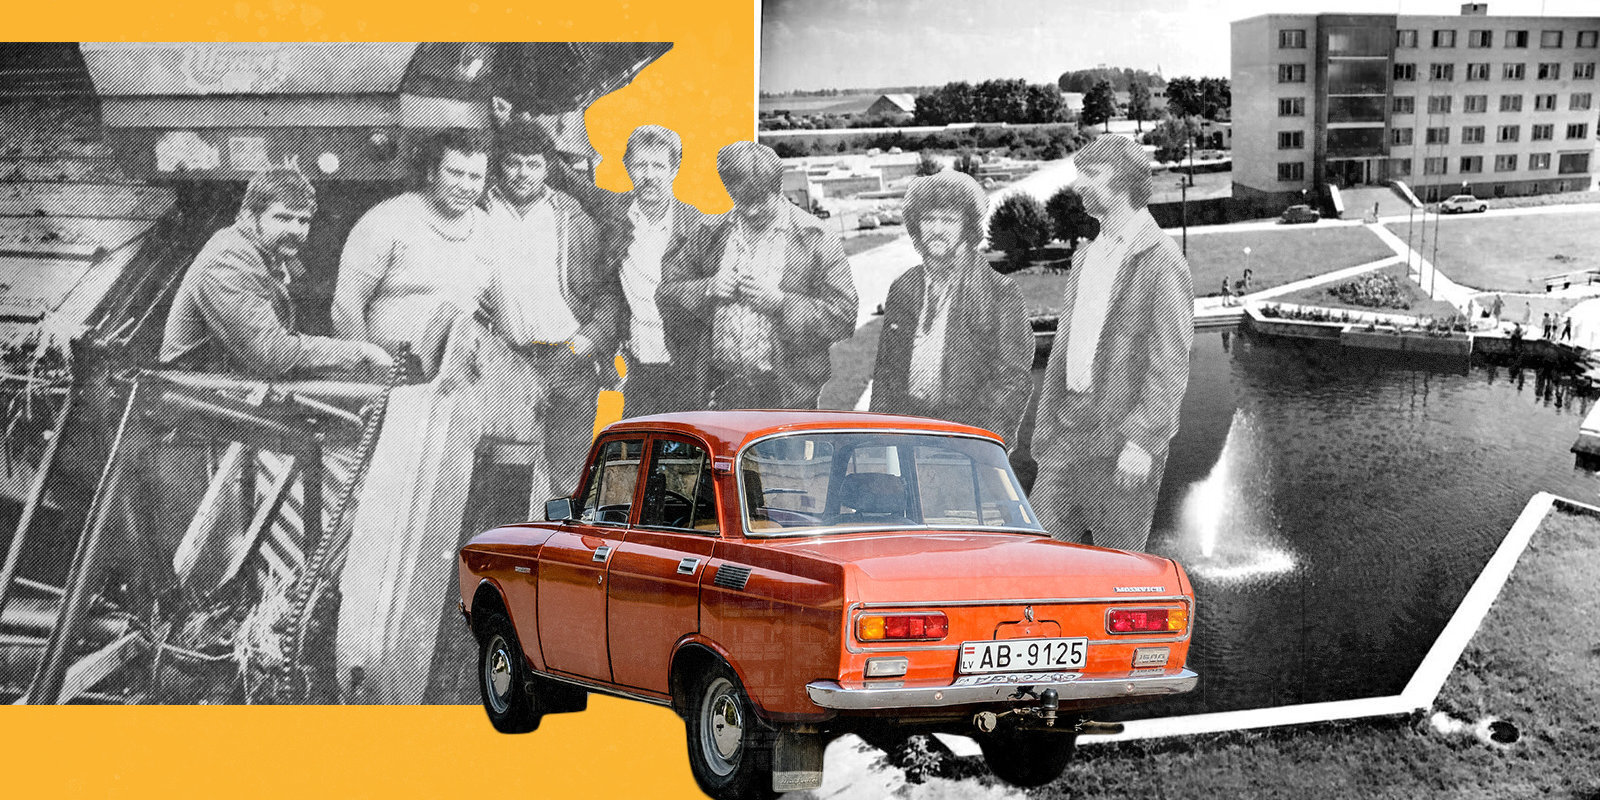 Яблочное вино, советские гастарбайтеры и мечты о троллейбусе. Как жил самый богатый колхоз советской Латвии